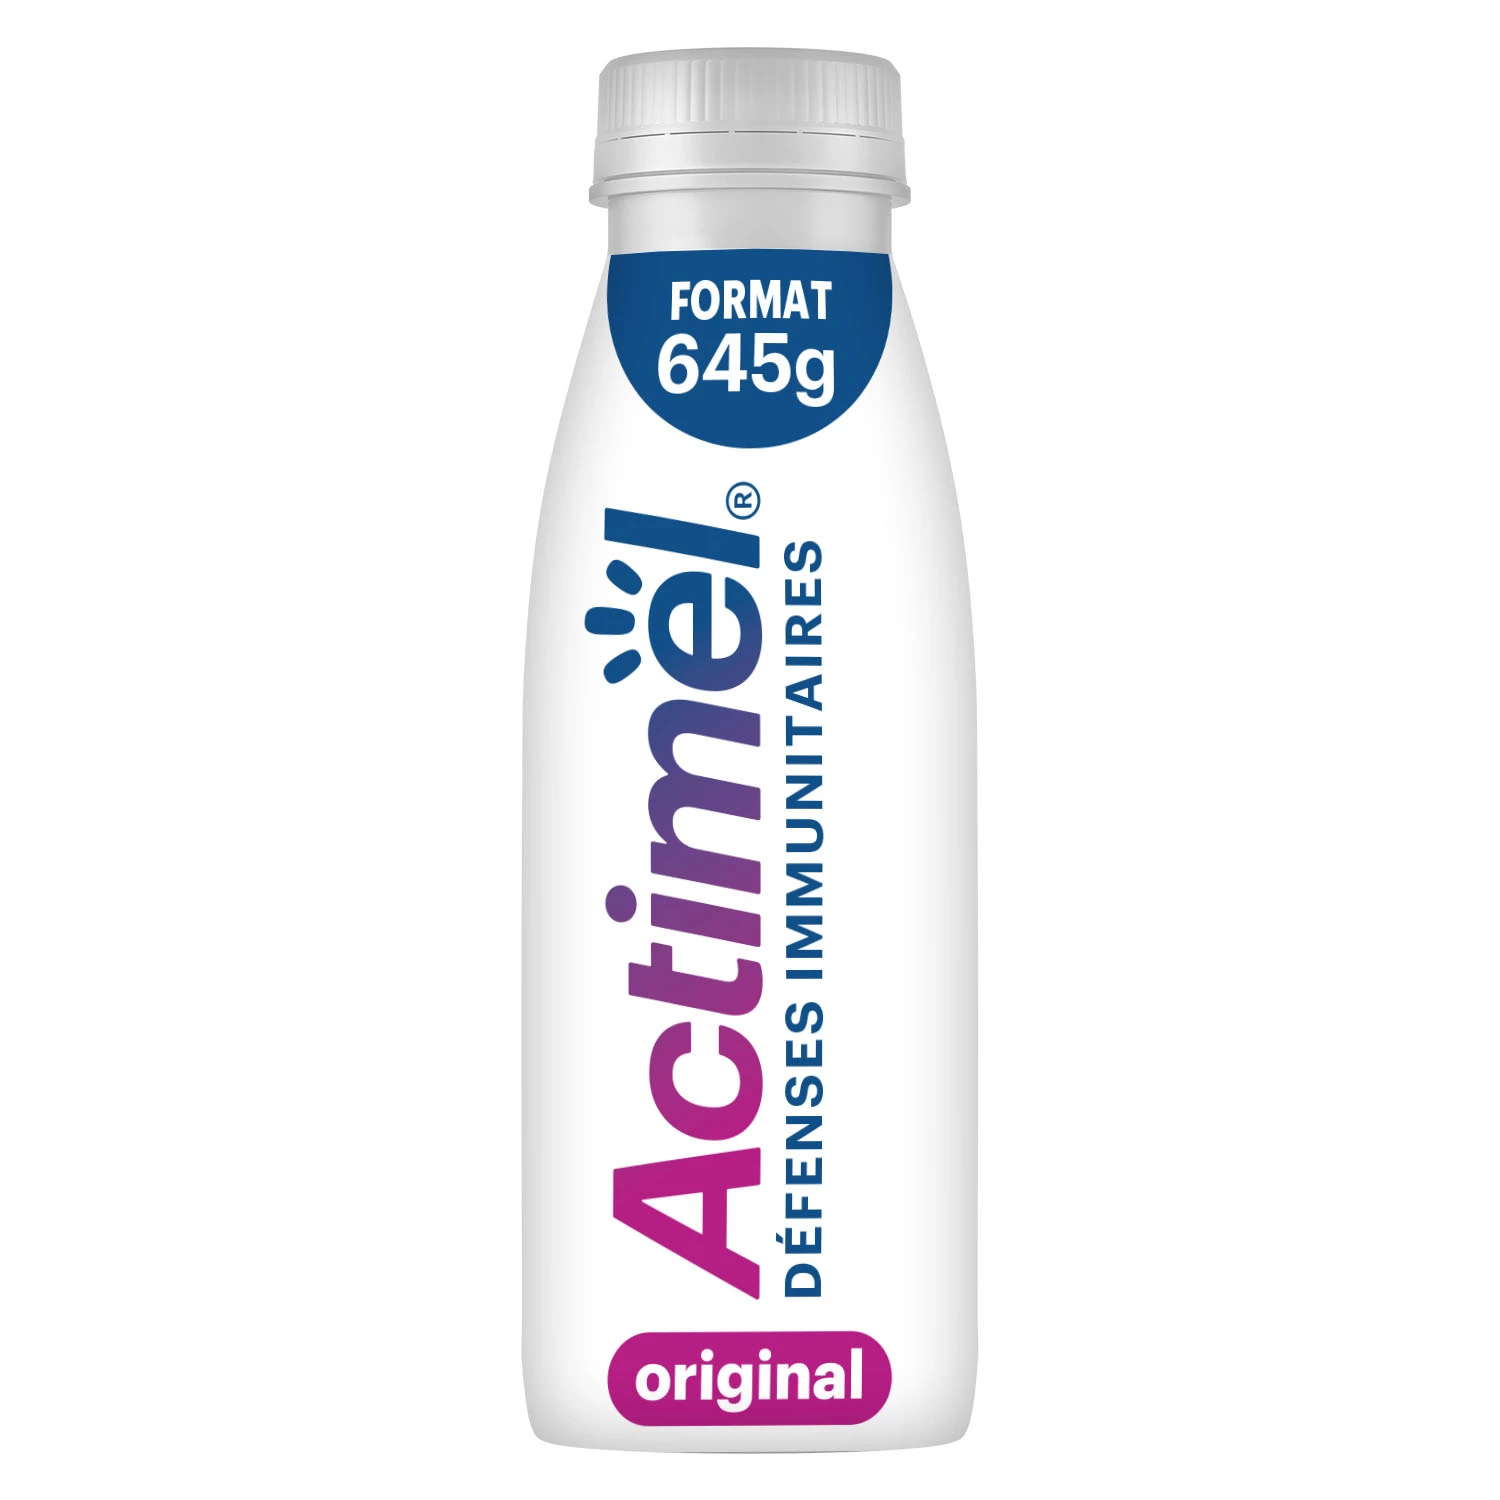 Gewone drinkyoghurt - ACTIMEL